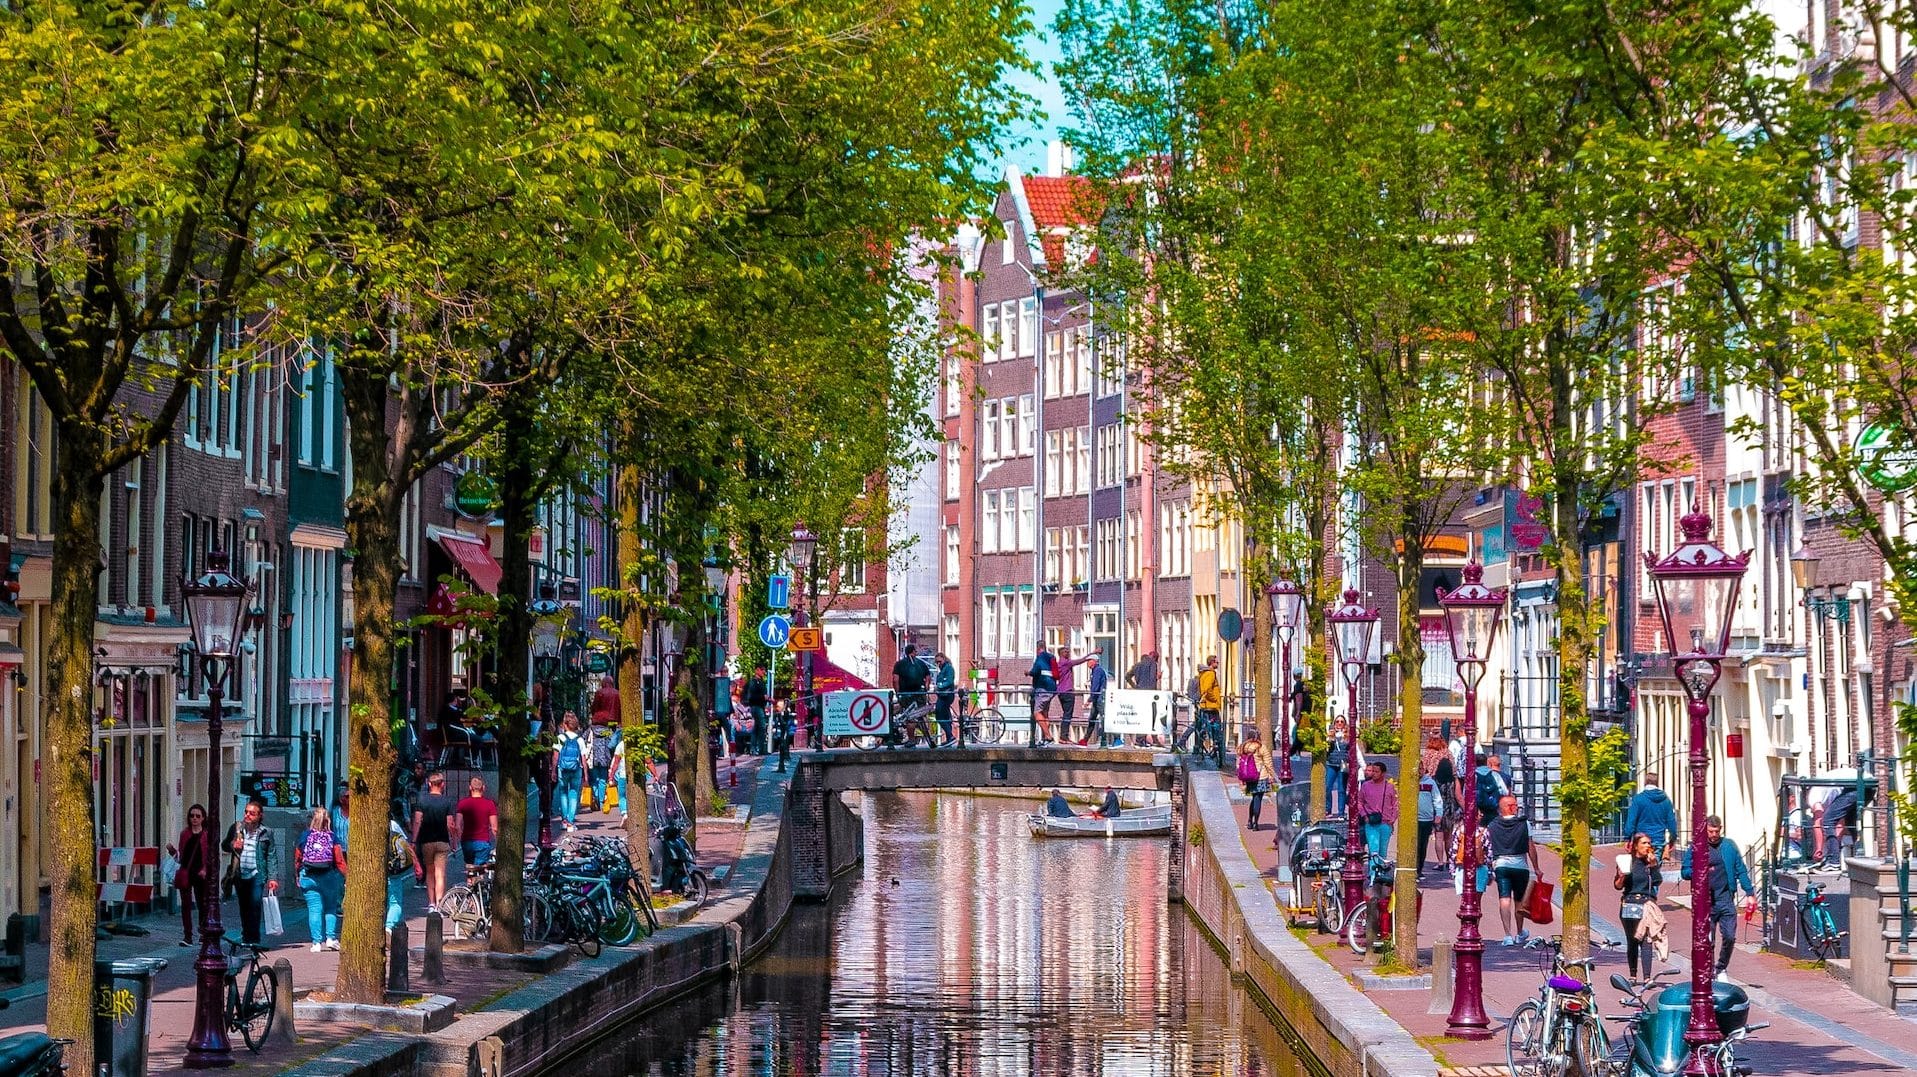 Conegut per les seves botigues i canals, Jordaan és una gran opció a l'hora d'escollir el millor districte per allotjar-se a Amsterdam